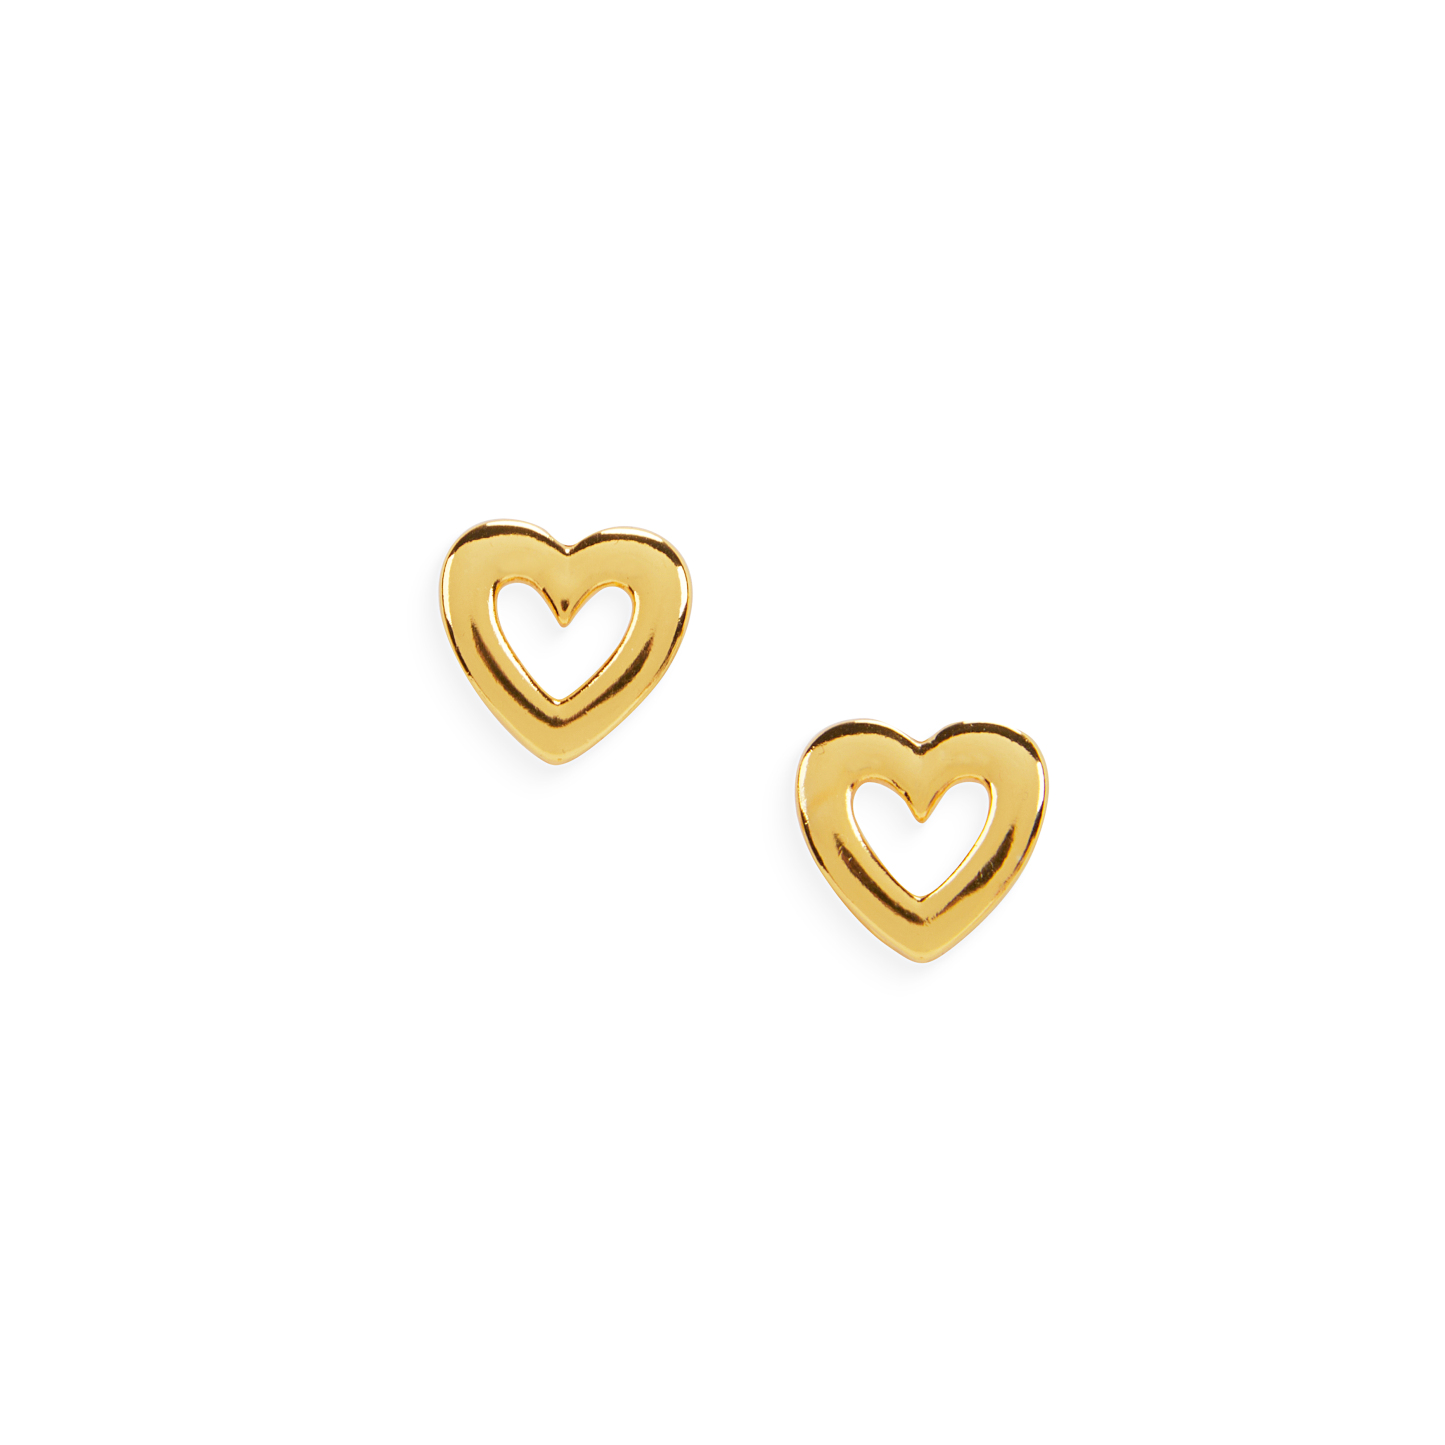 Star button earrings